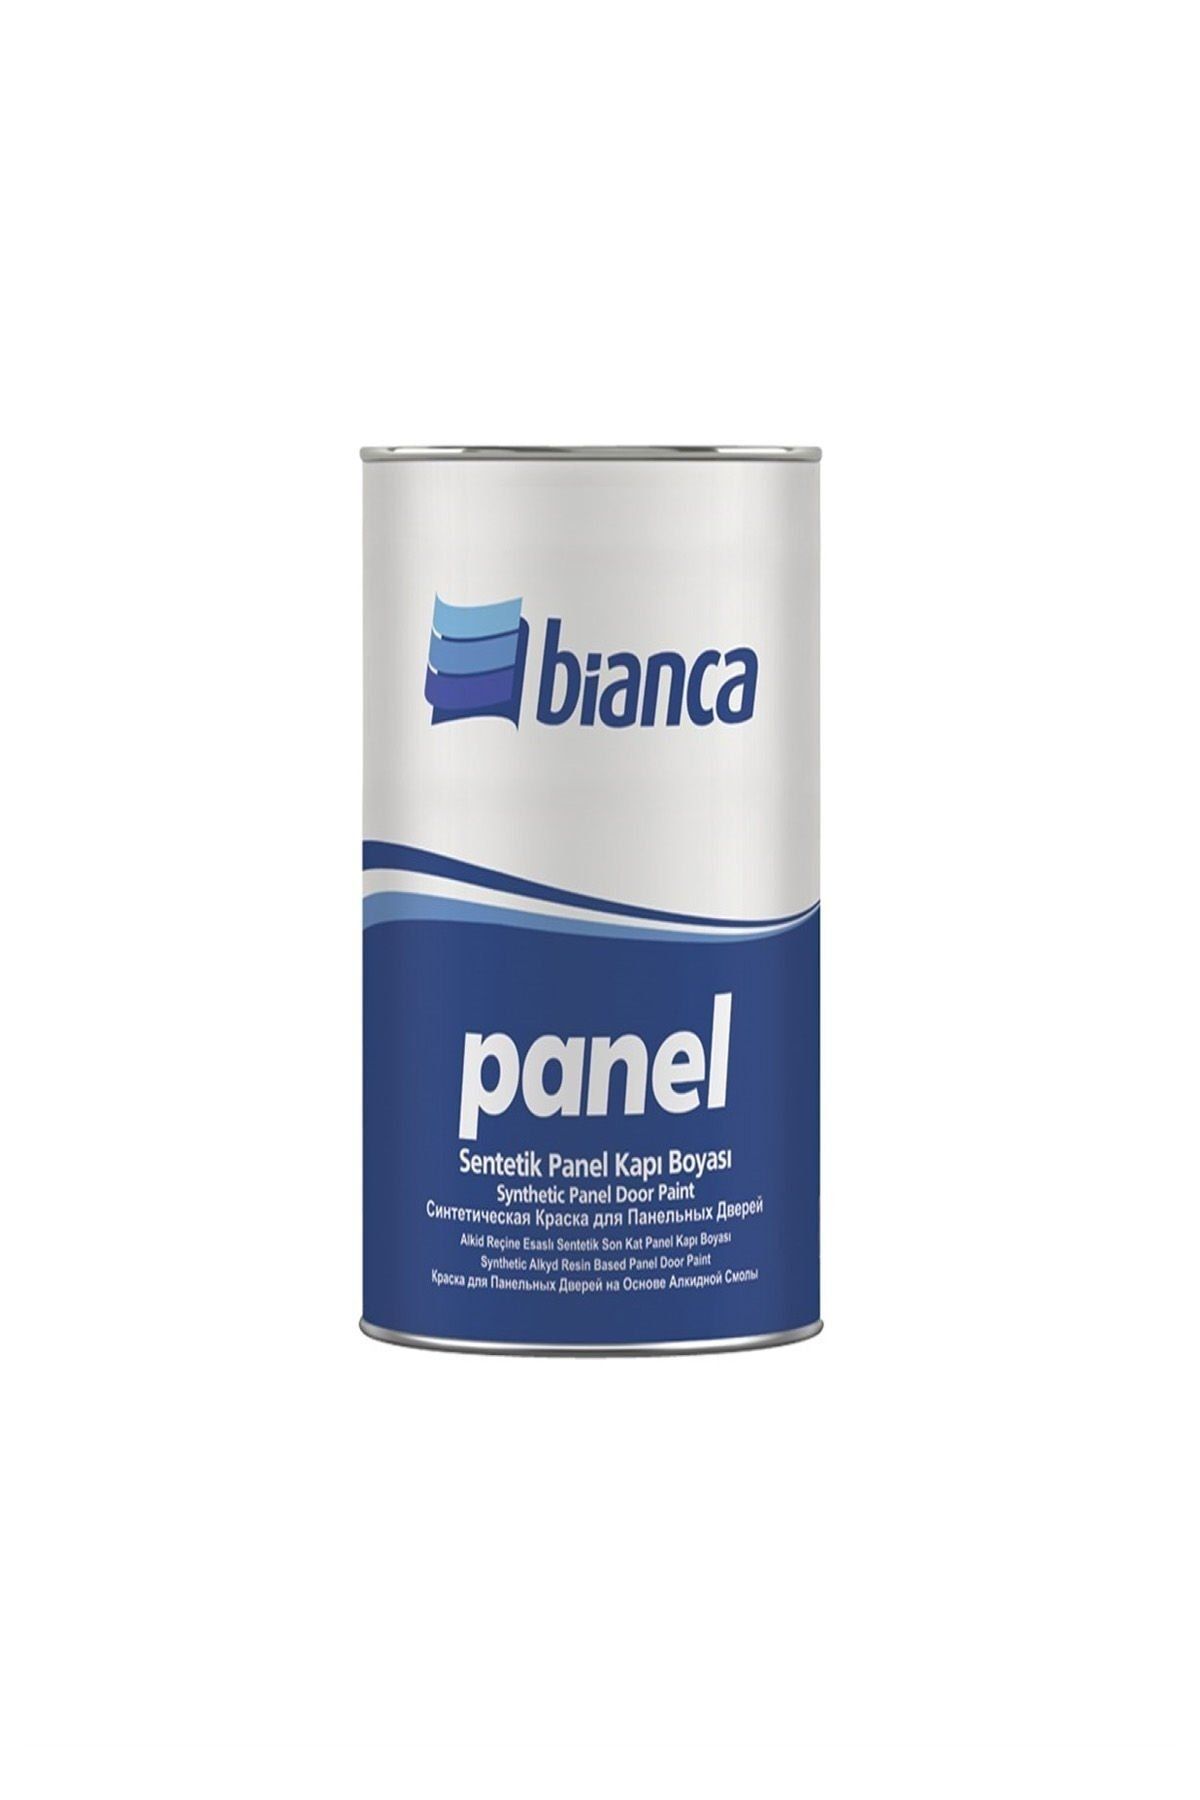 Bianca Panel Kapı Boyası 0.75 Lt